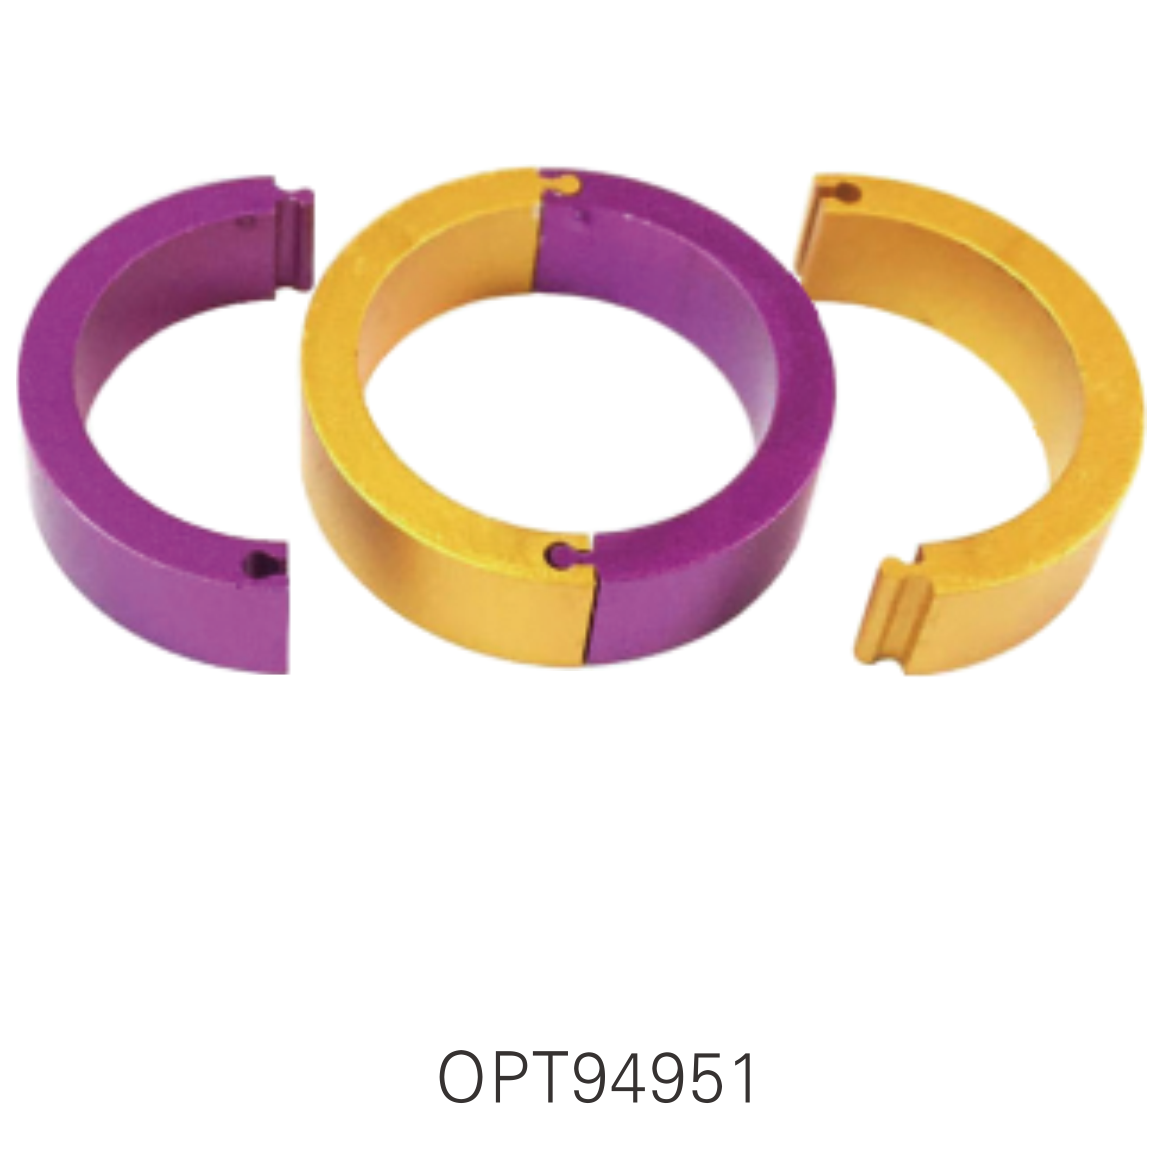 OPT94951 Pigeon Rings